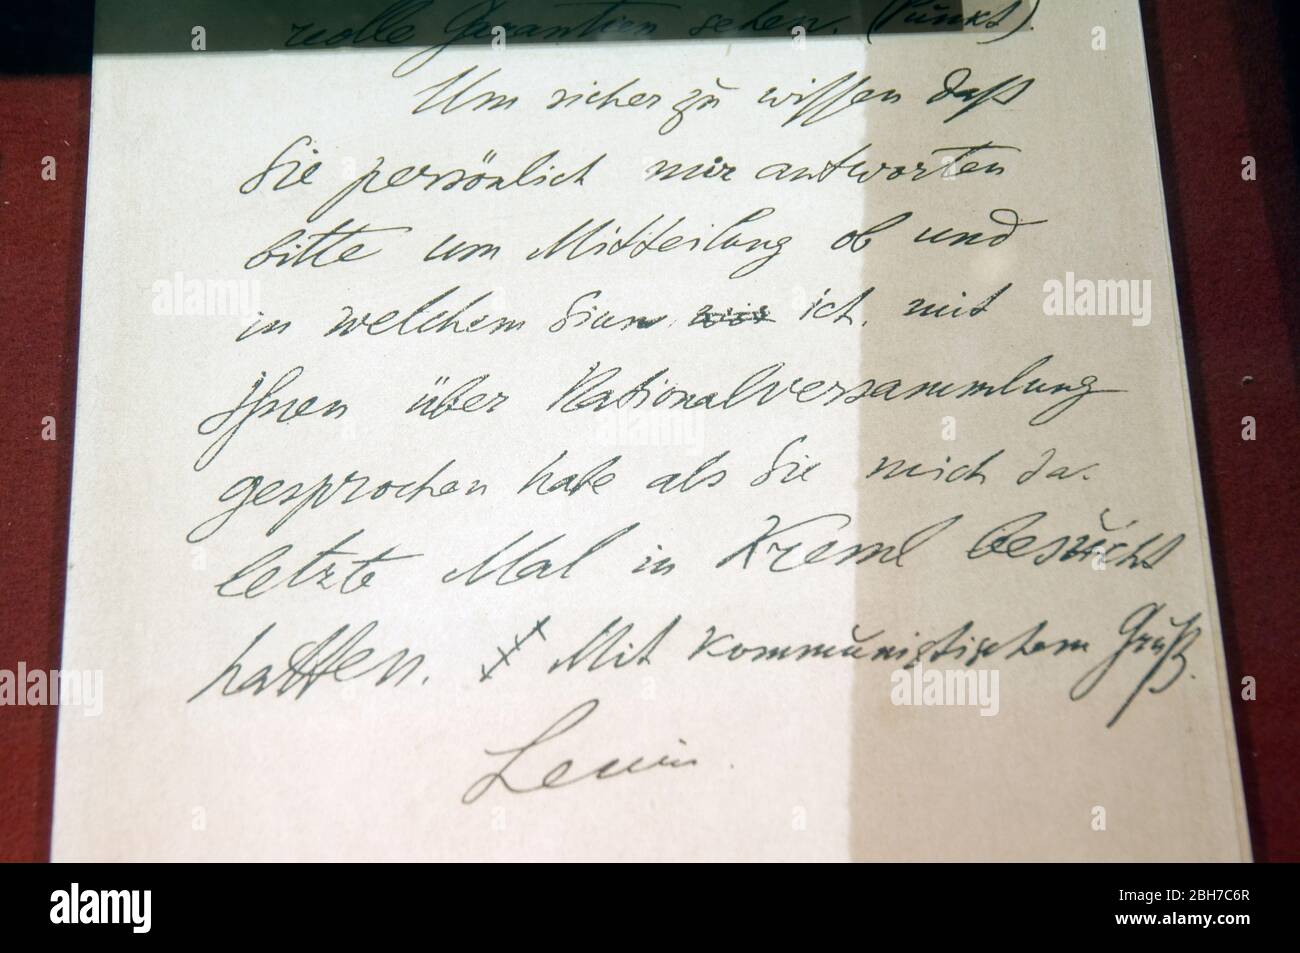 Staatliches Historisches Museum (ehemaliges Lenin-Museum), Brief Lenins an Béla Kun der ungarischen Kommunistischen Partei 1919, Ala-Too-Platz, Bischkek, Stockfoto